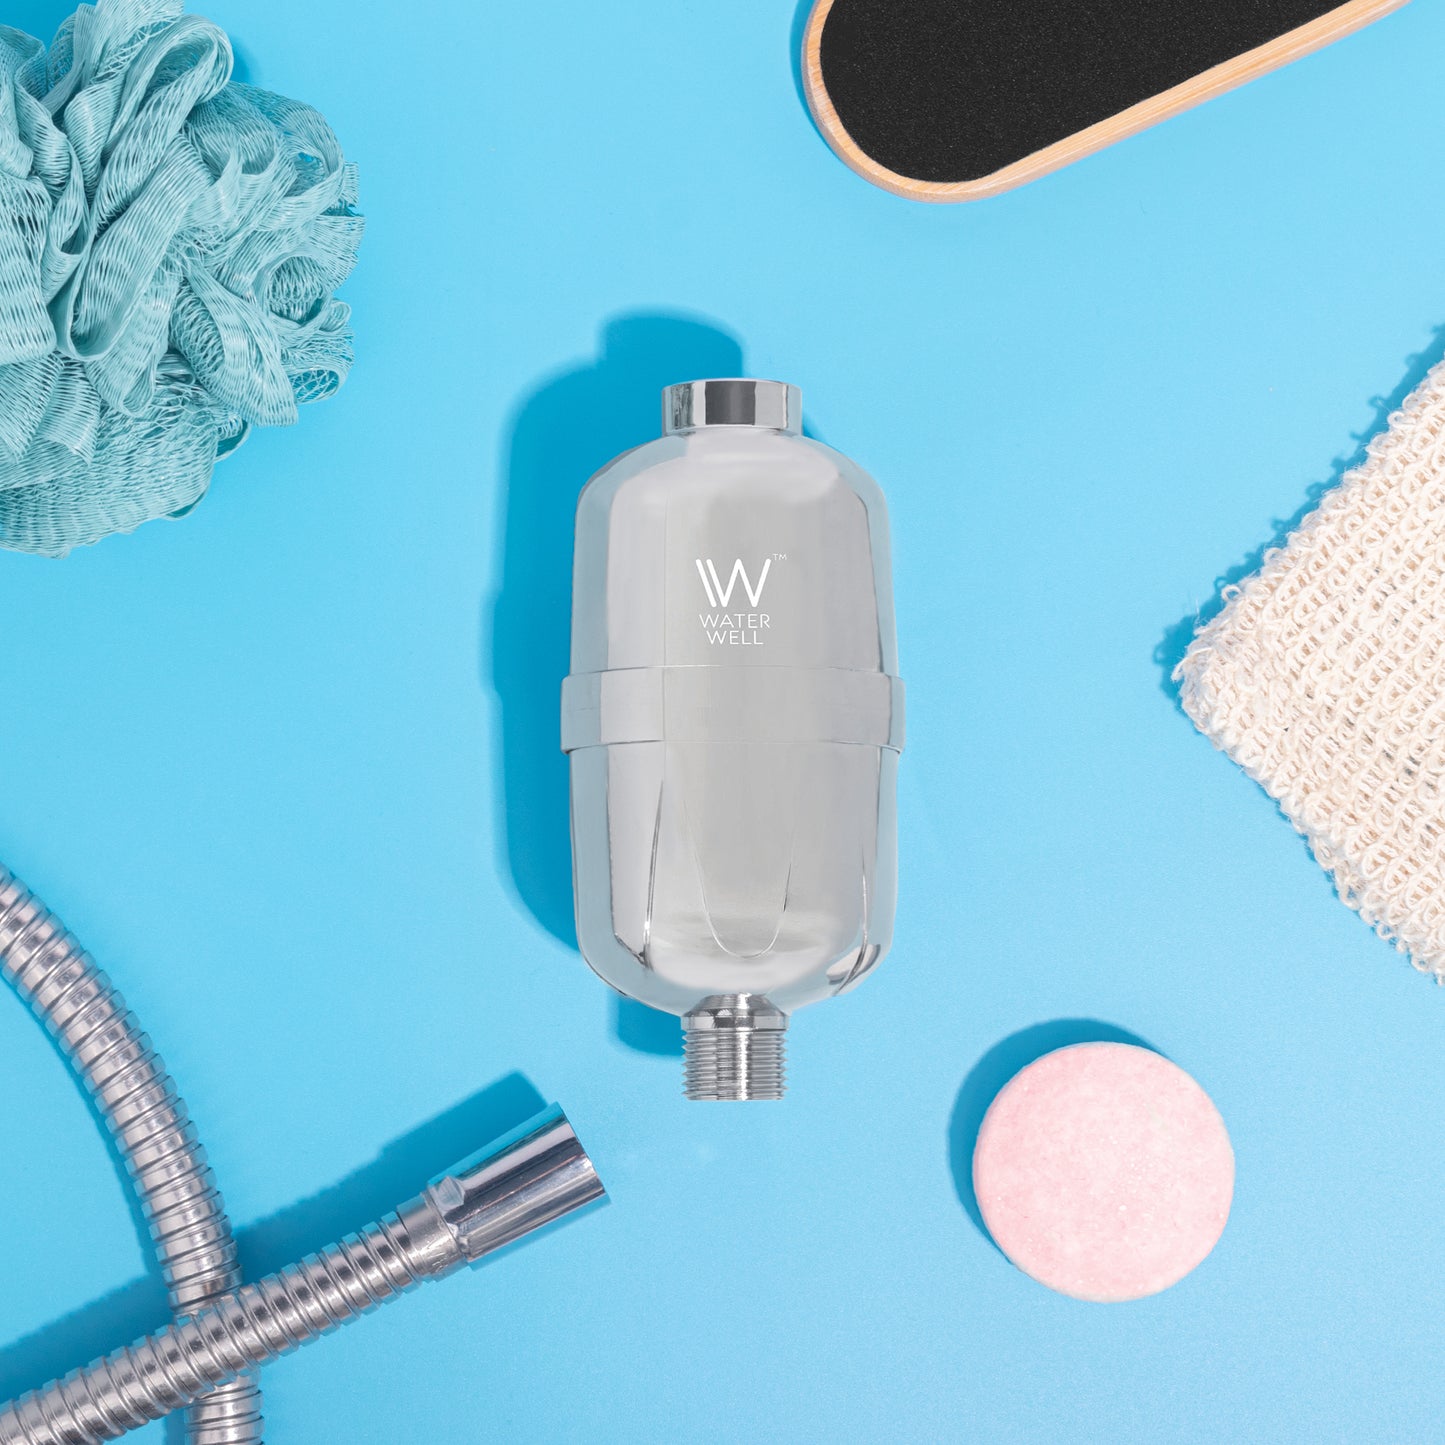 WaterWell Shower Filter